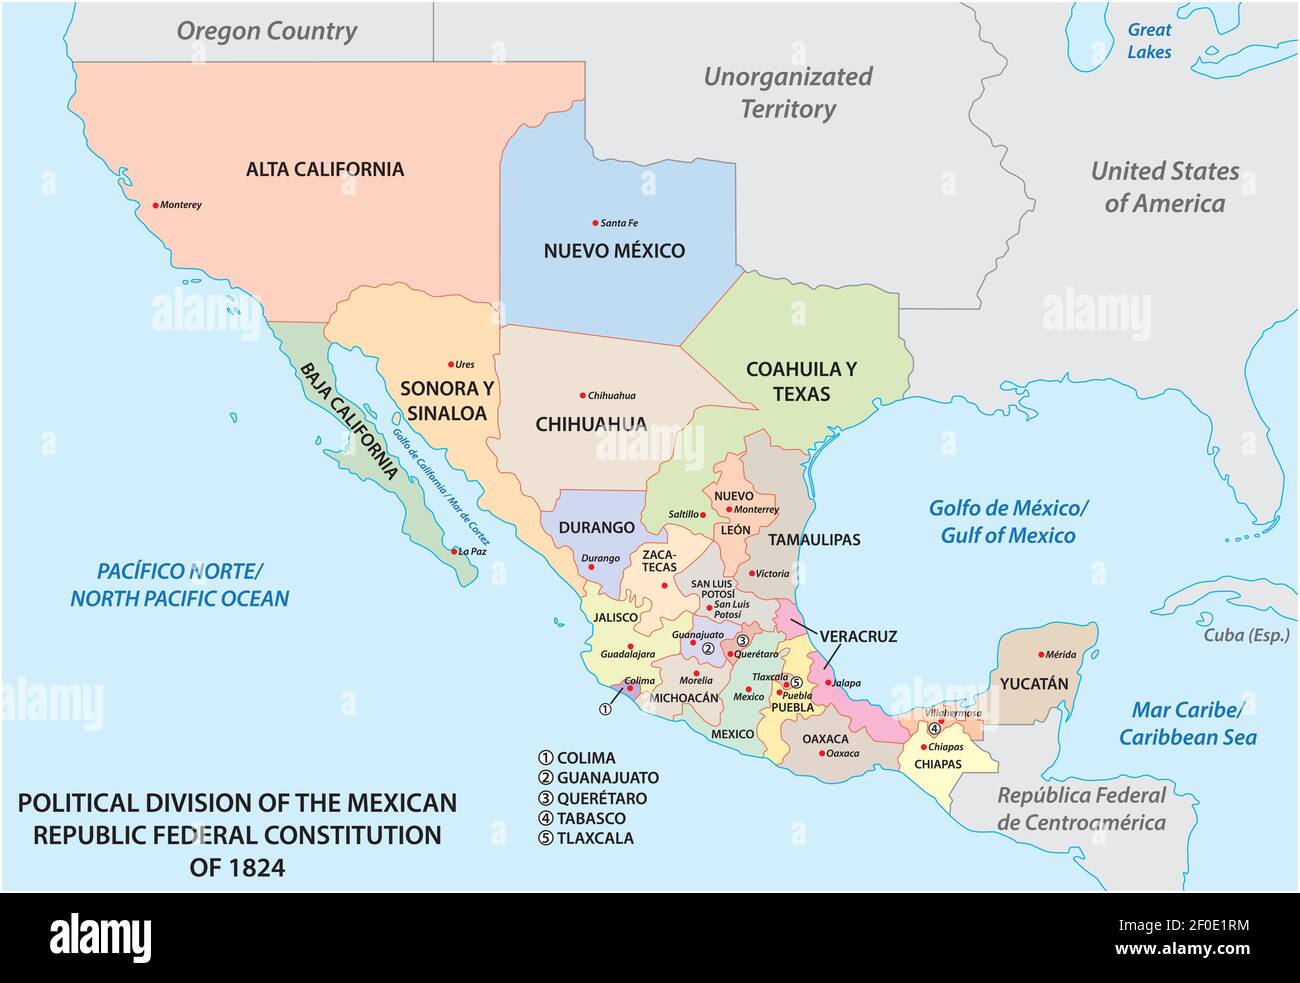 Politische Teilung der mexikanischen republik Bundesverfassung von 1824 Stock Vektor